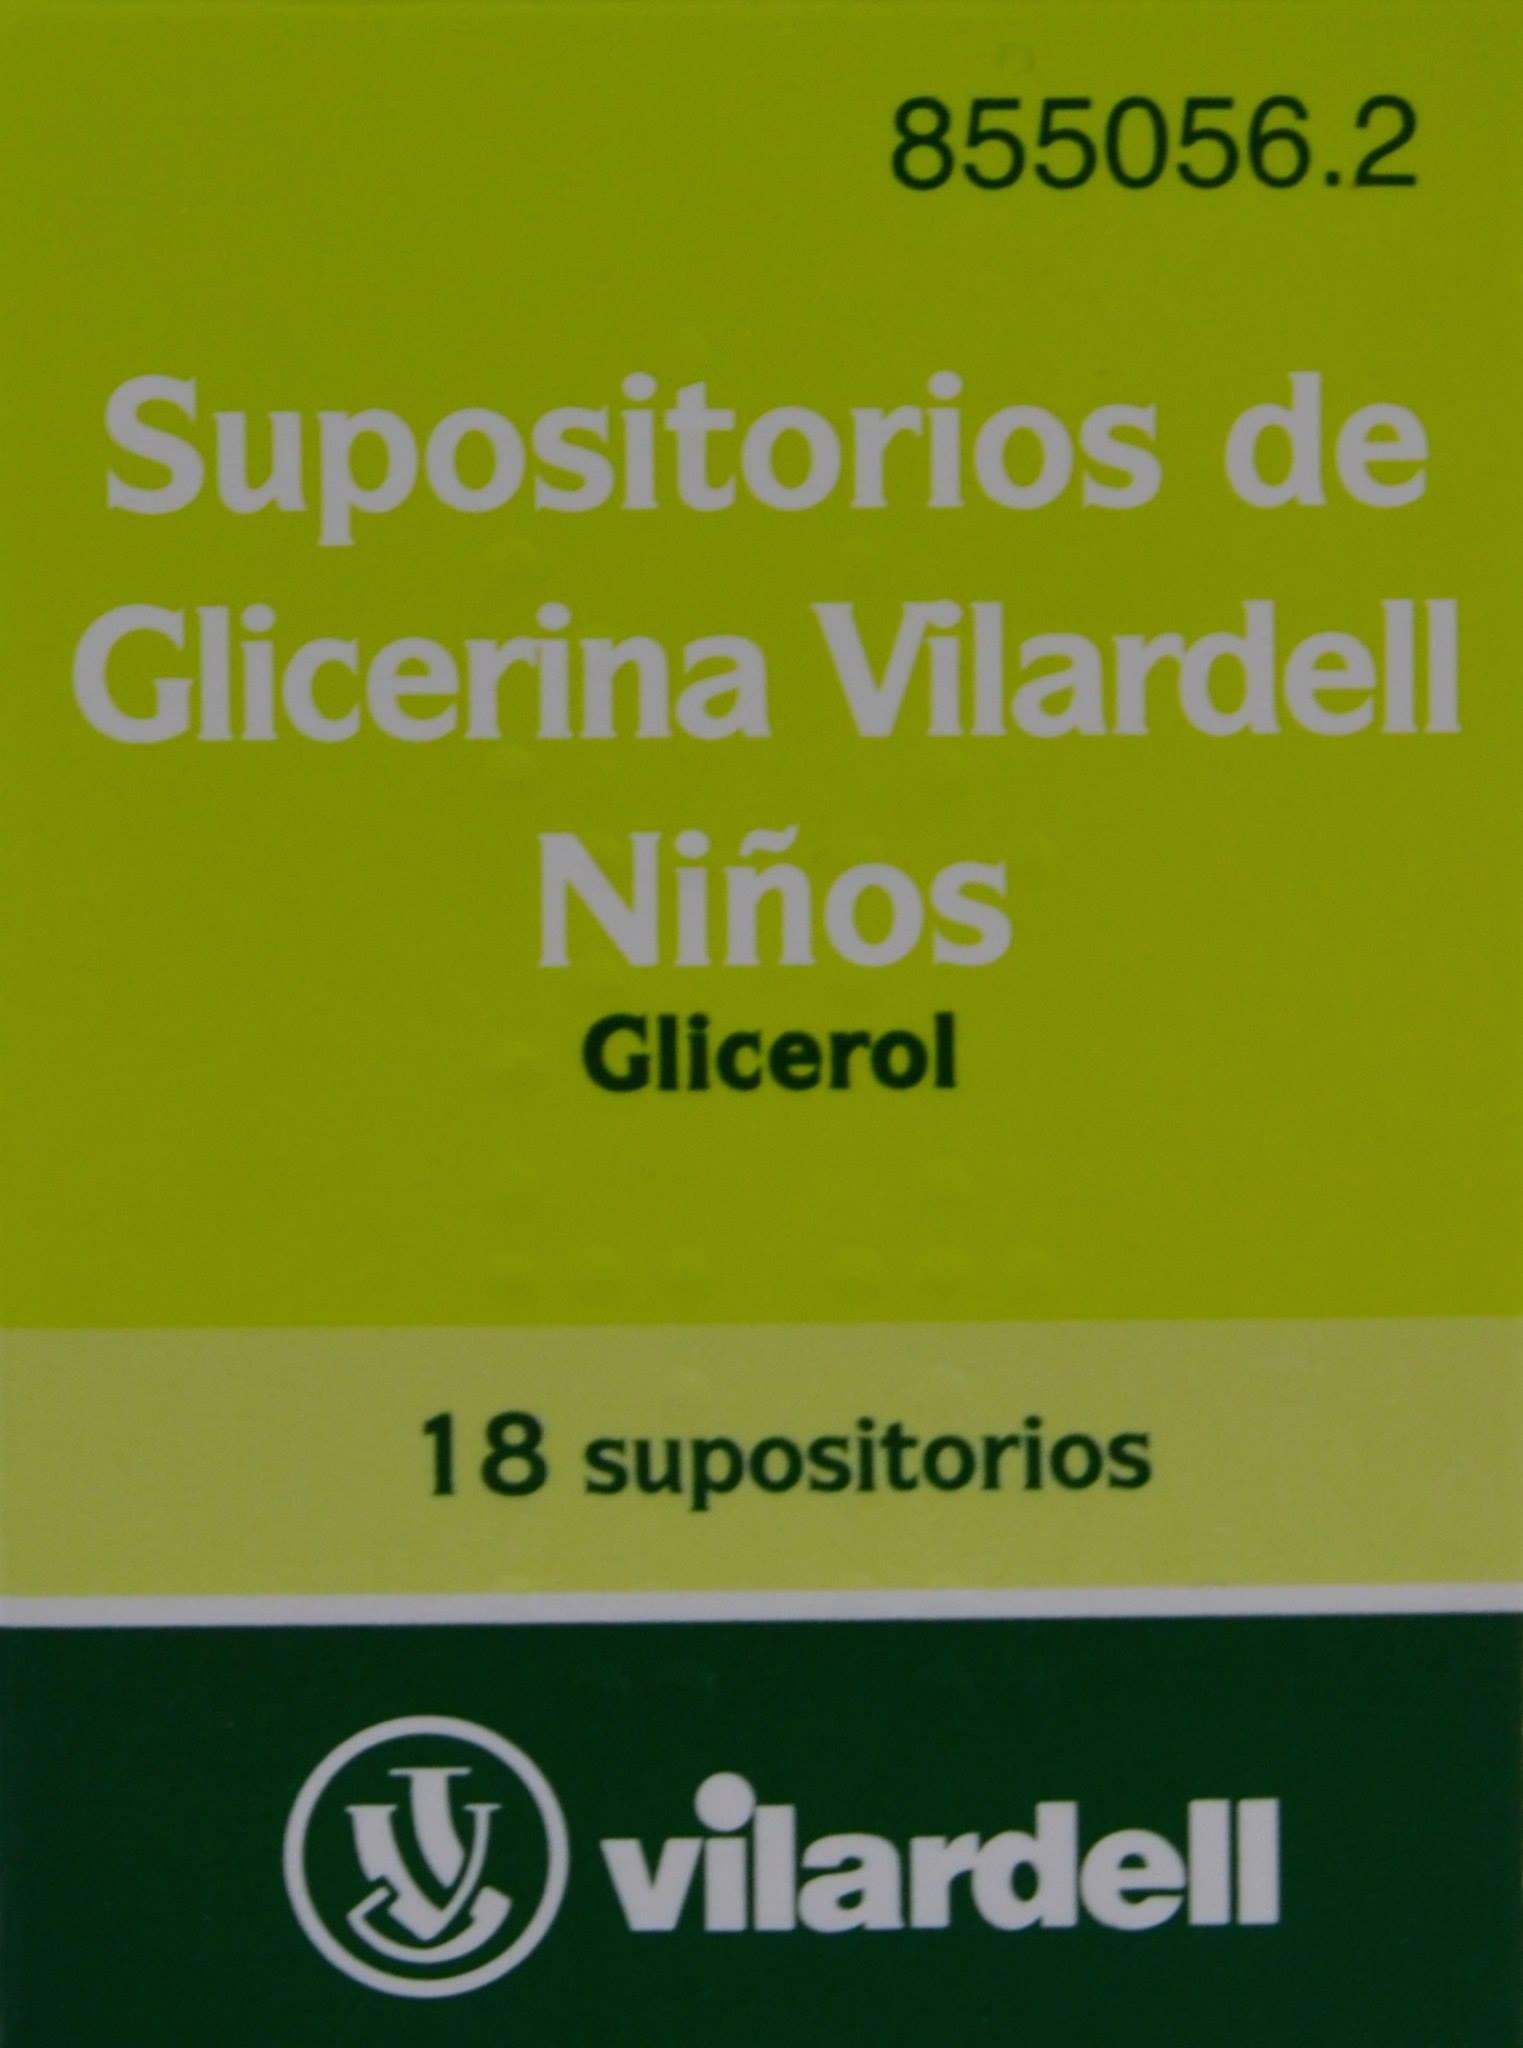 Supositorios de Glicerina Vilardell Adultos - Laboratorios Vilardell